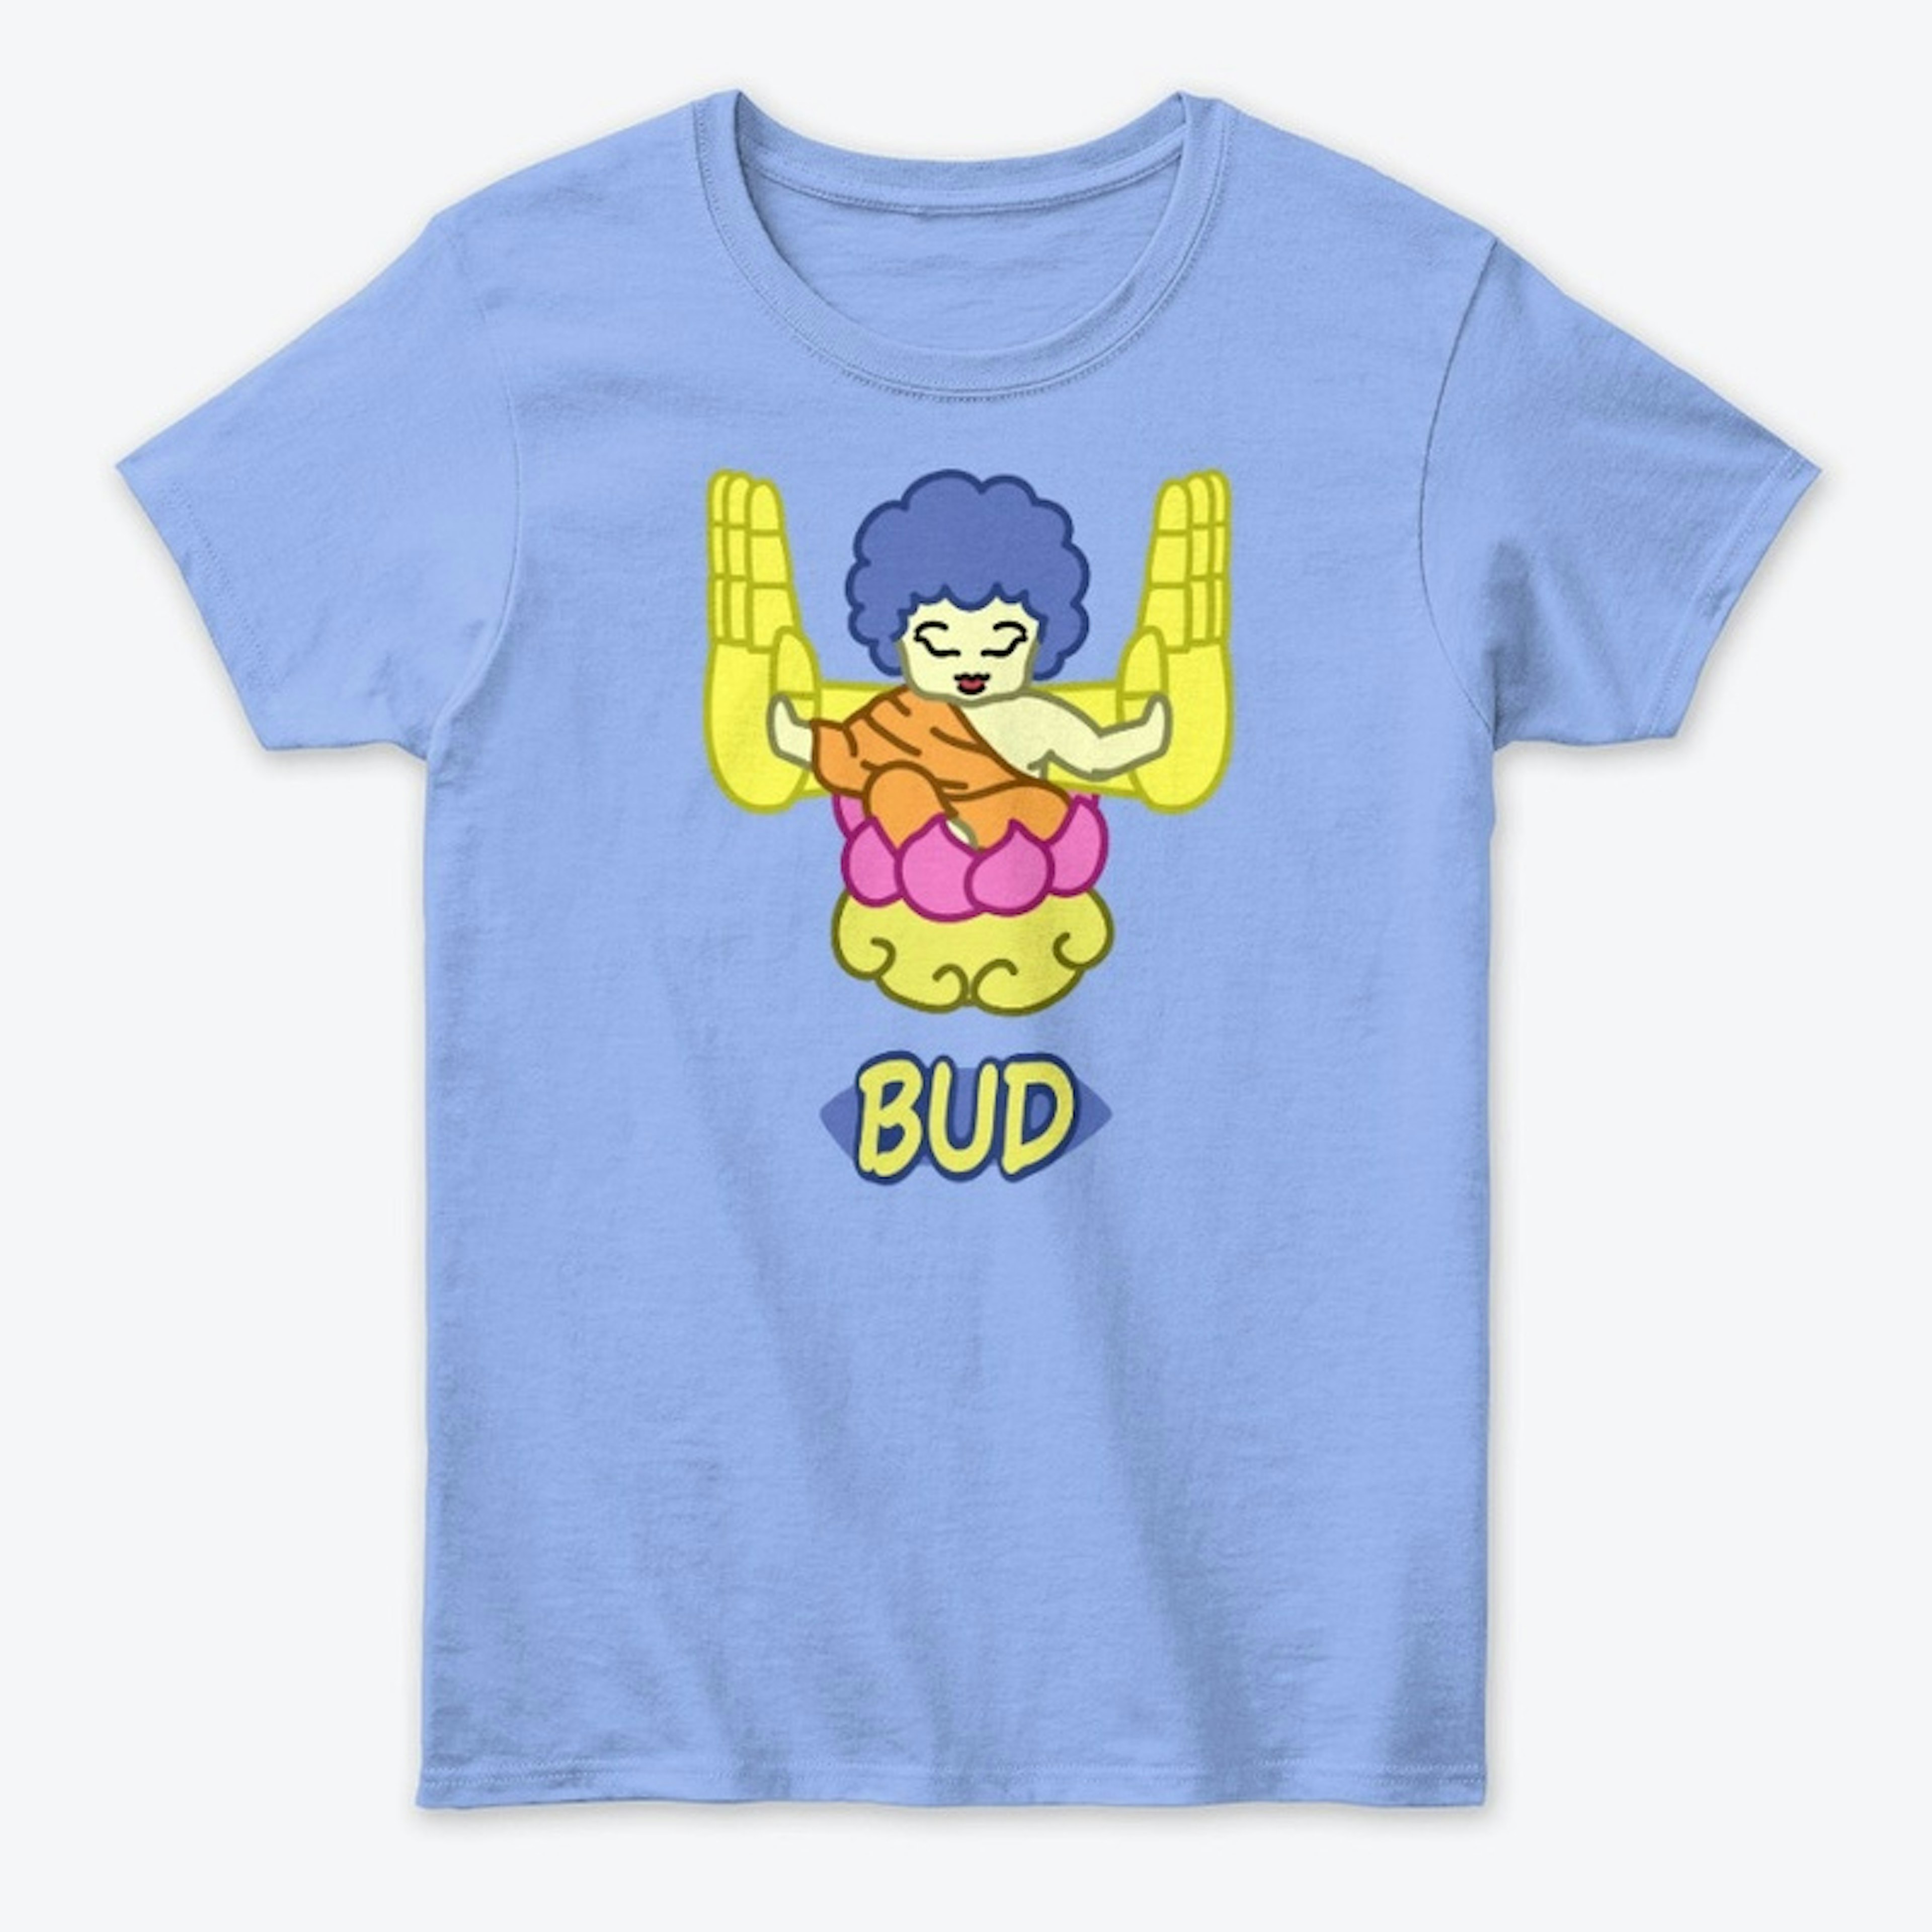 Bud Shirt + Logo on back